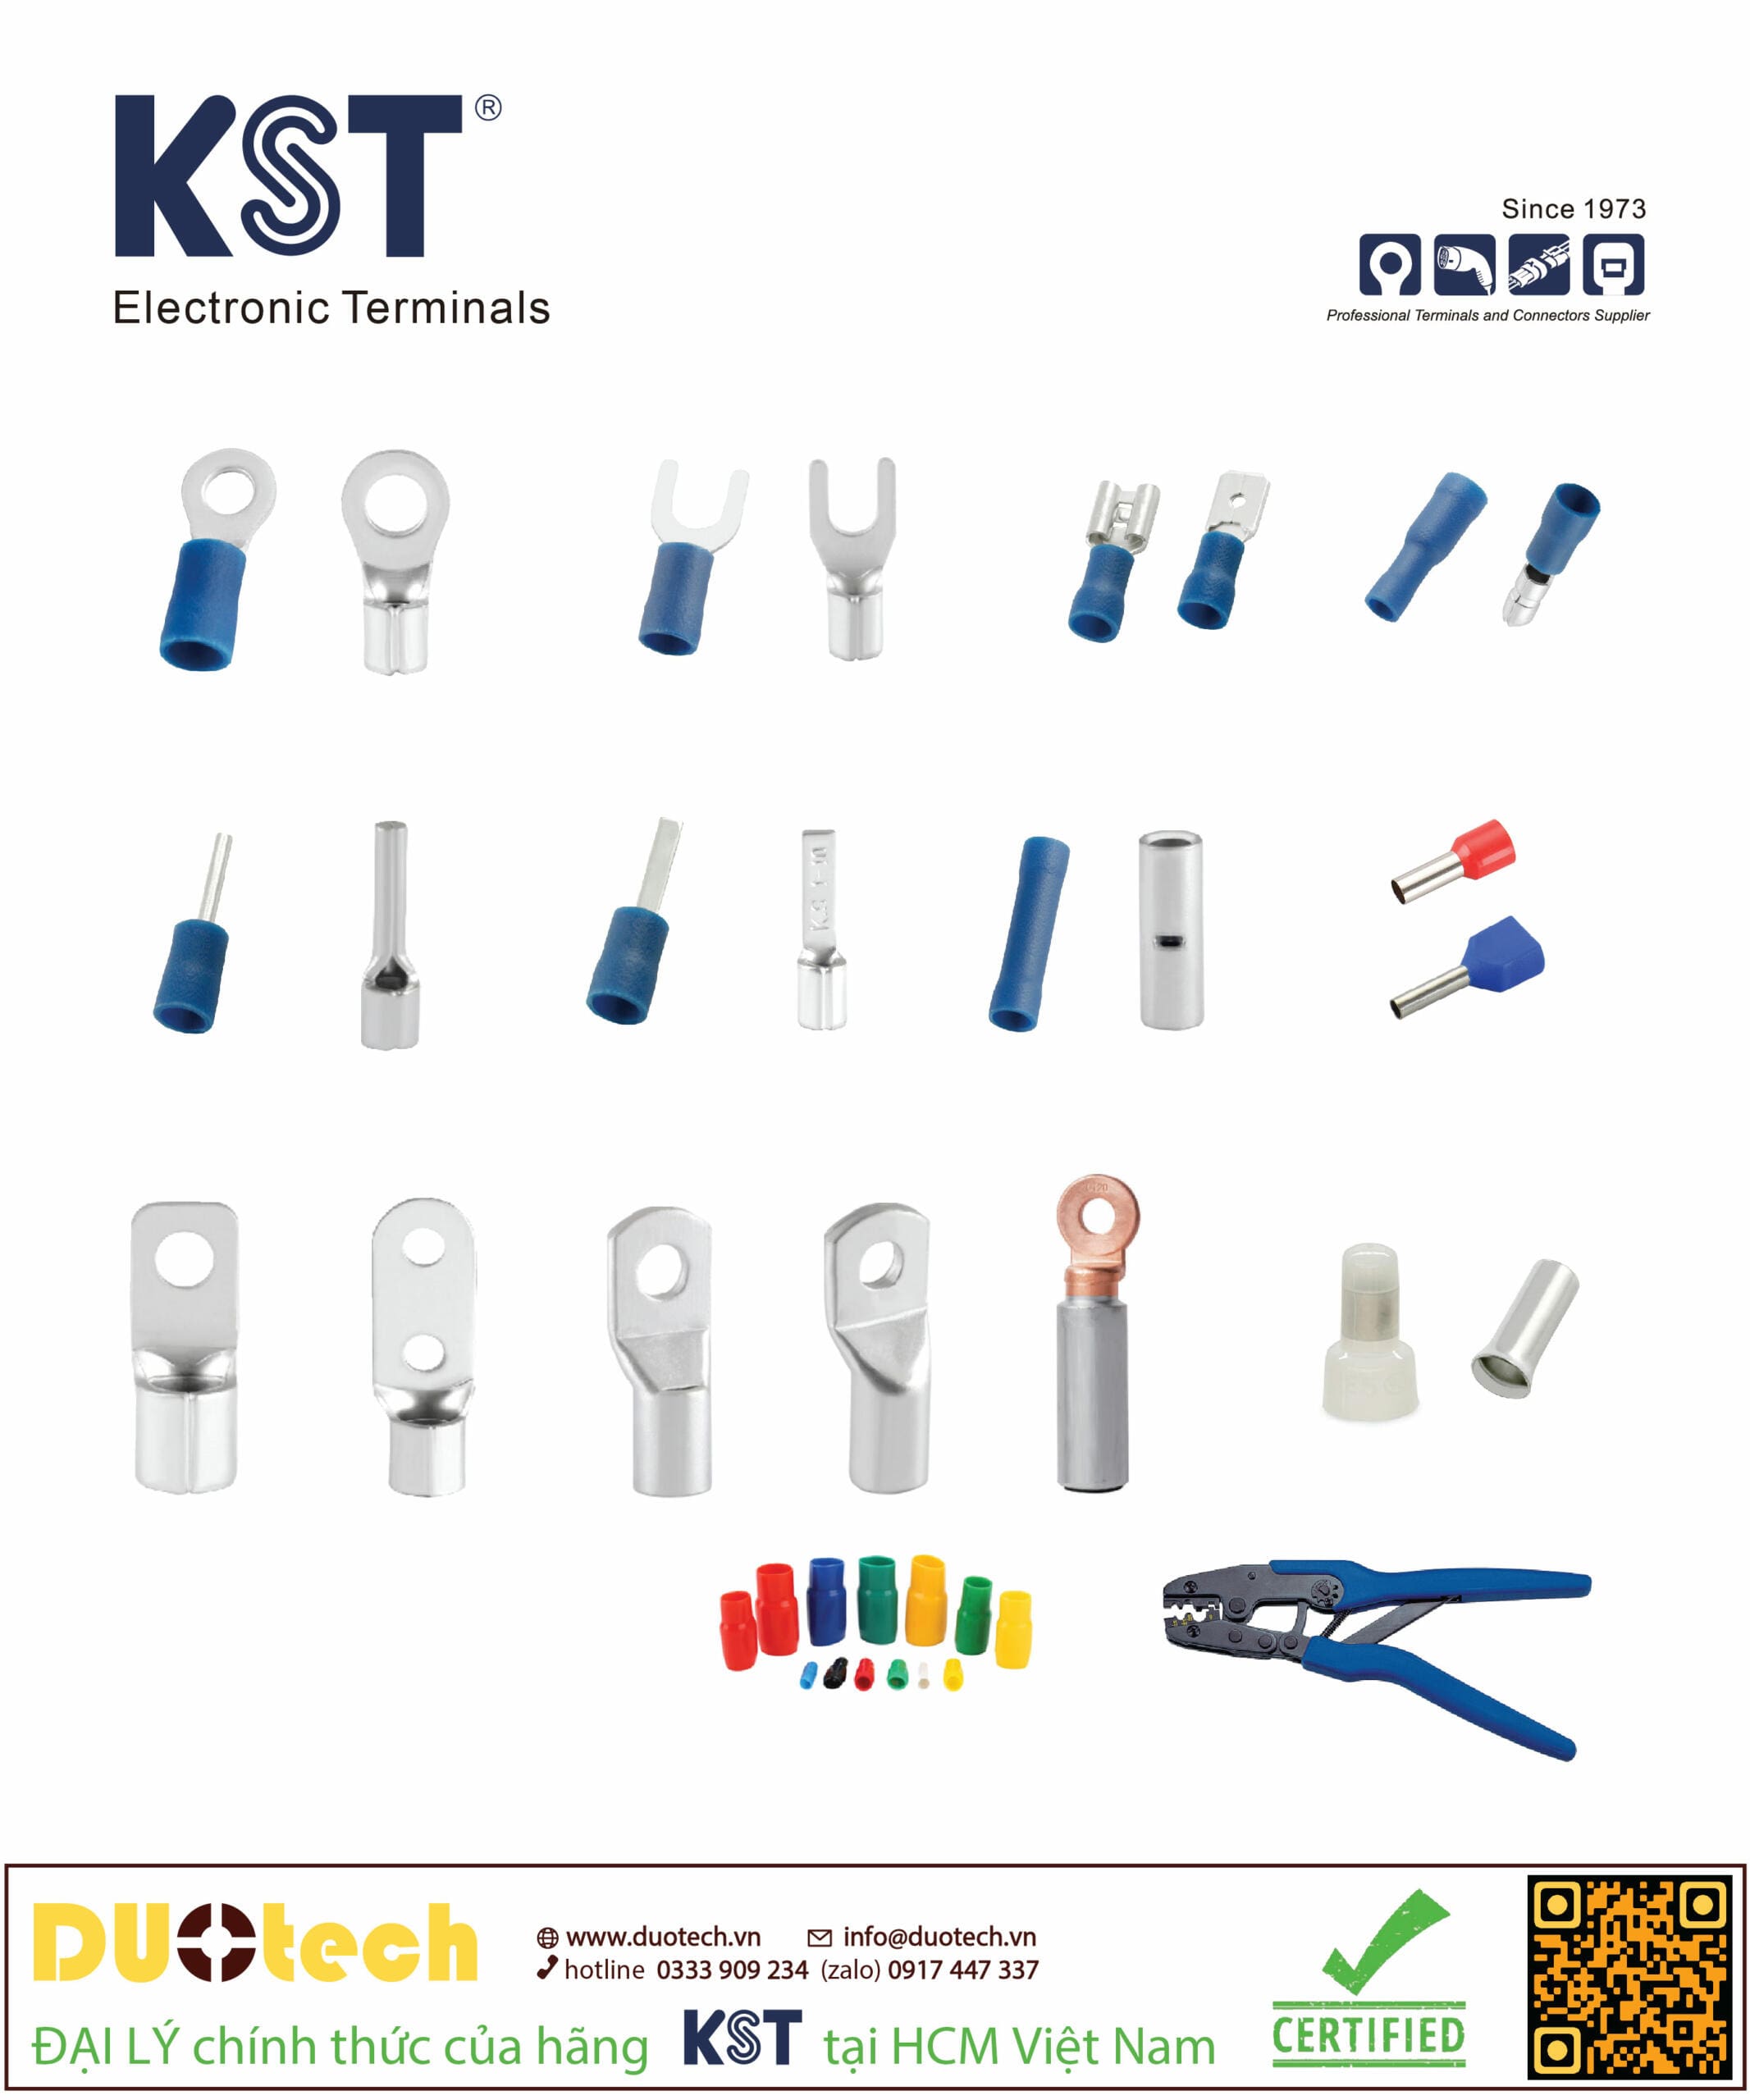 Sản phẩm thương hiệu KST xuất xứ Đài Loan được đại lý DUOtech cung cấp phân phối chính hãng brand maker KS TERMINALS INC made in Taiwan tại HCM việt nam